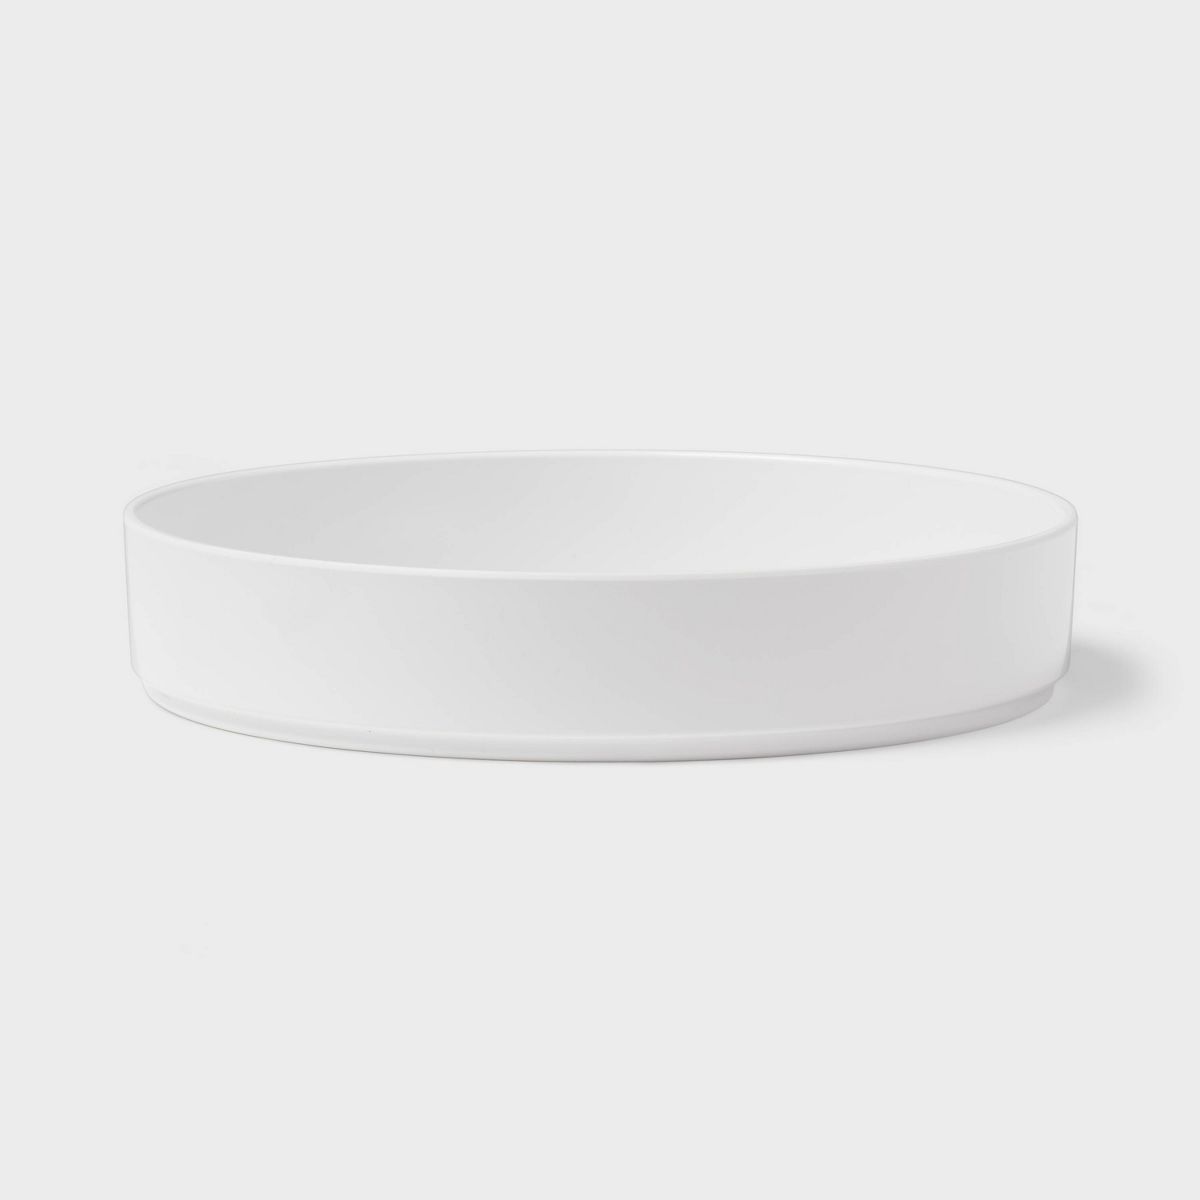 42oz Plastic Dinner Bowl White - Threshold™ | Target